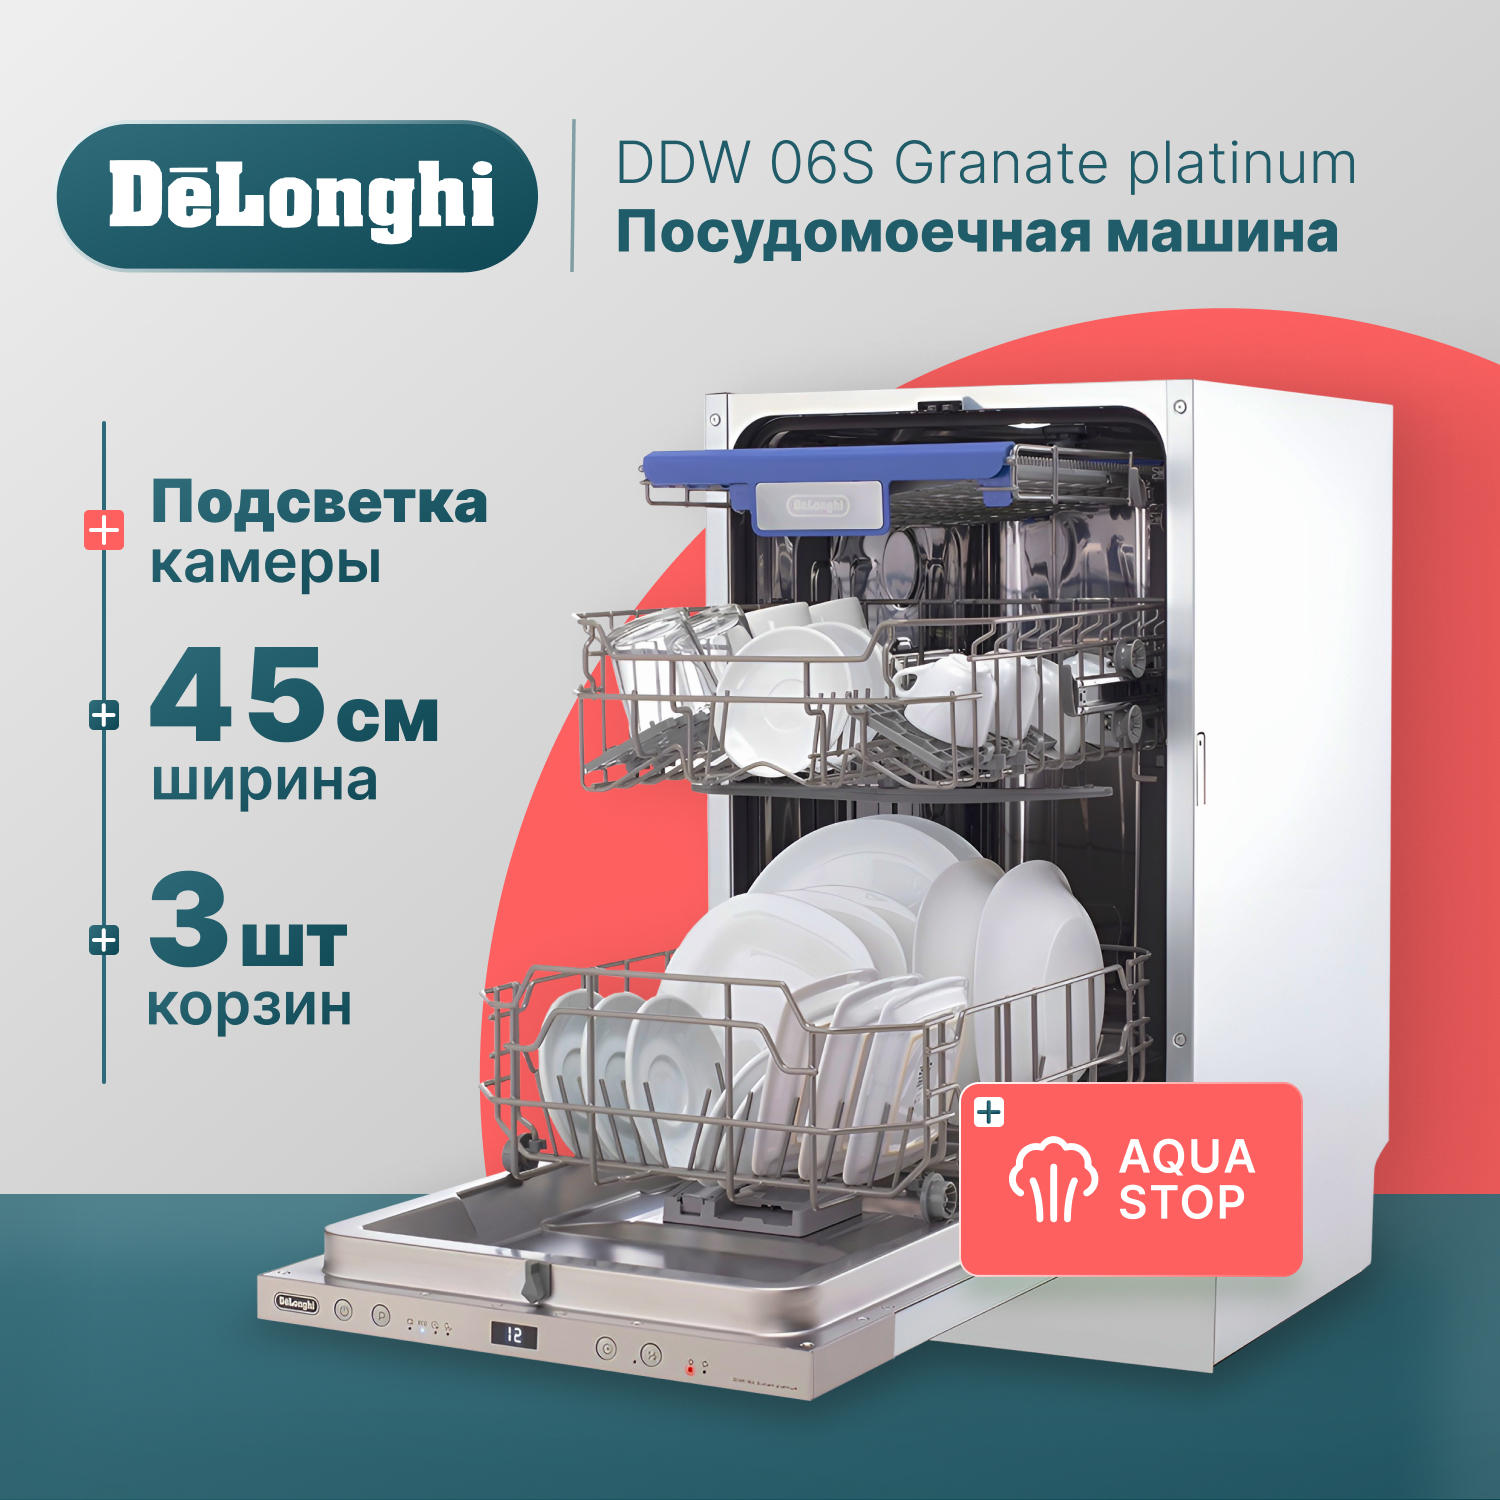 Встраиваемая посудомоечная машина Delonghi DDW06S Granate platinum встраиваемая посудомоечная машина delonghi ddw06f